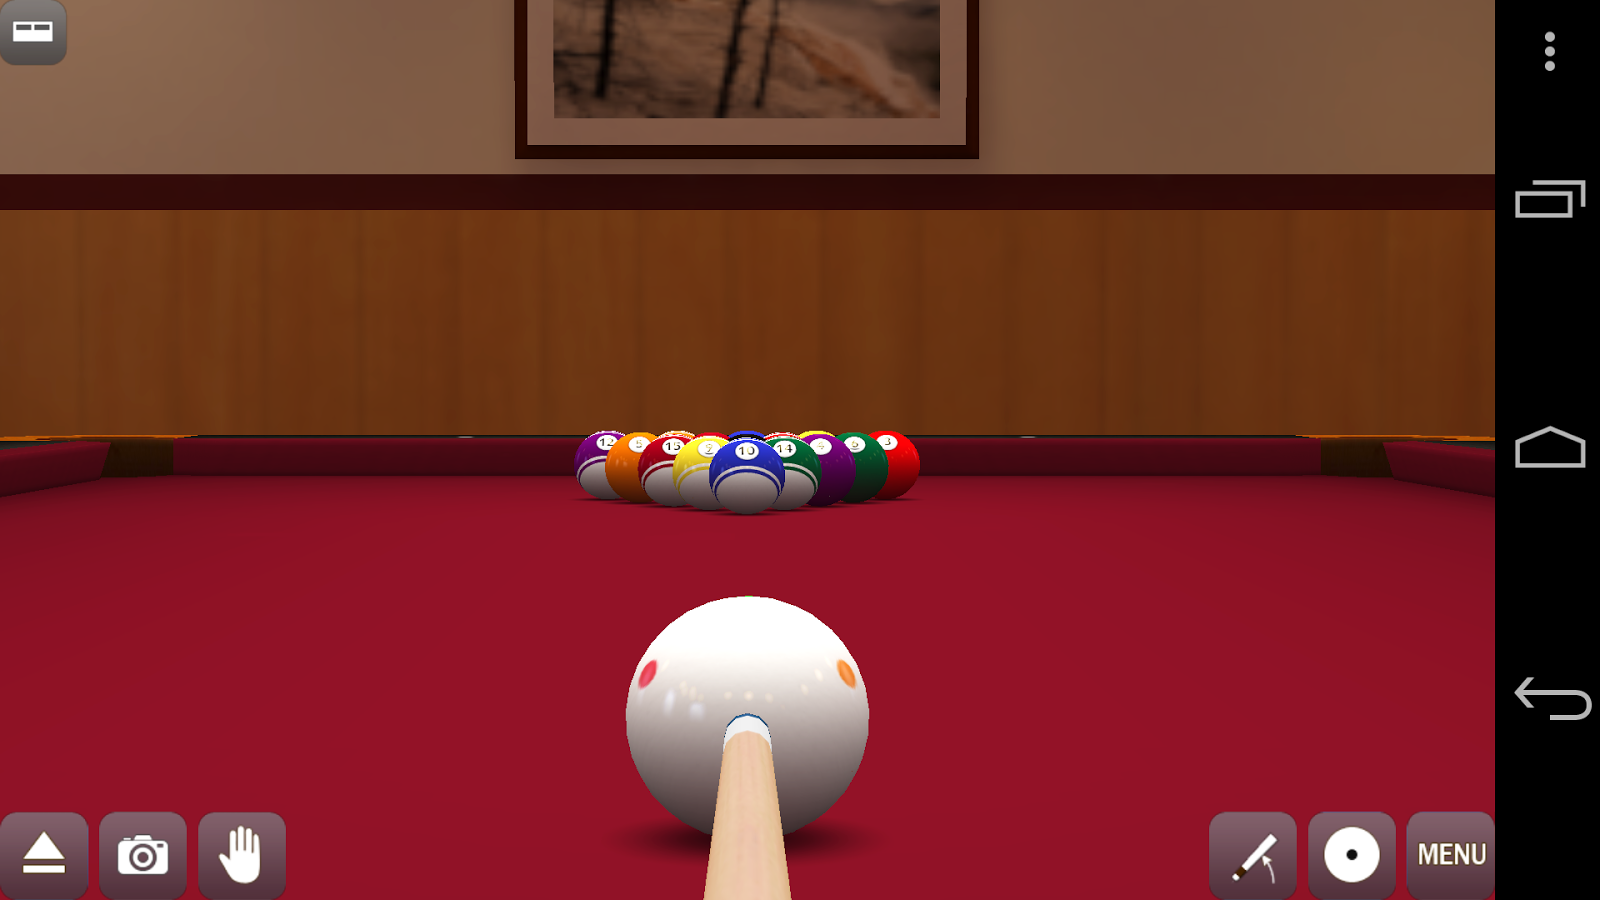 Pool Break Pro 3D Billiards v2.5.4 APK